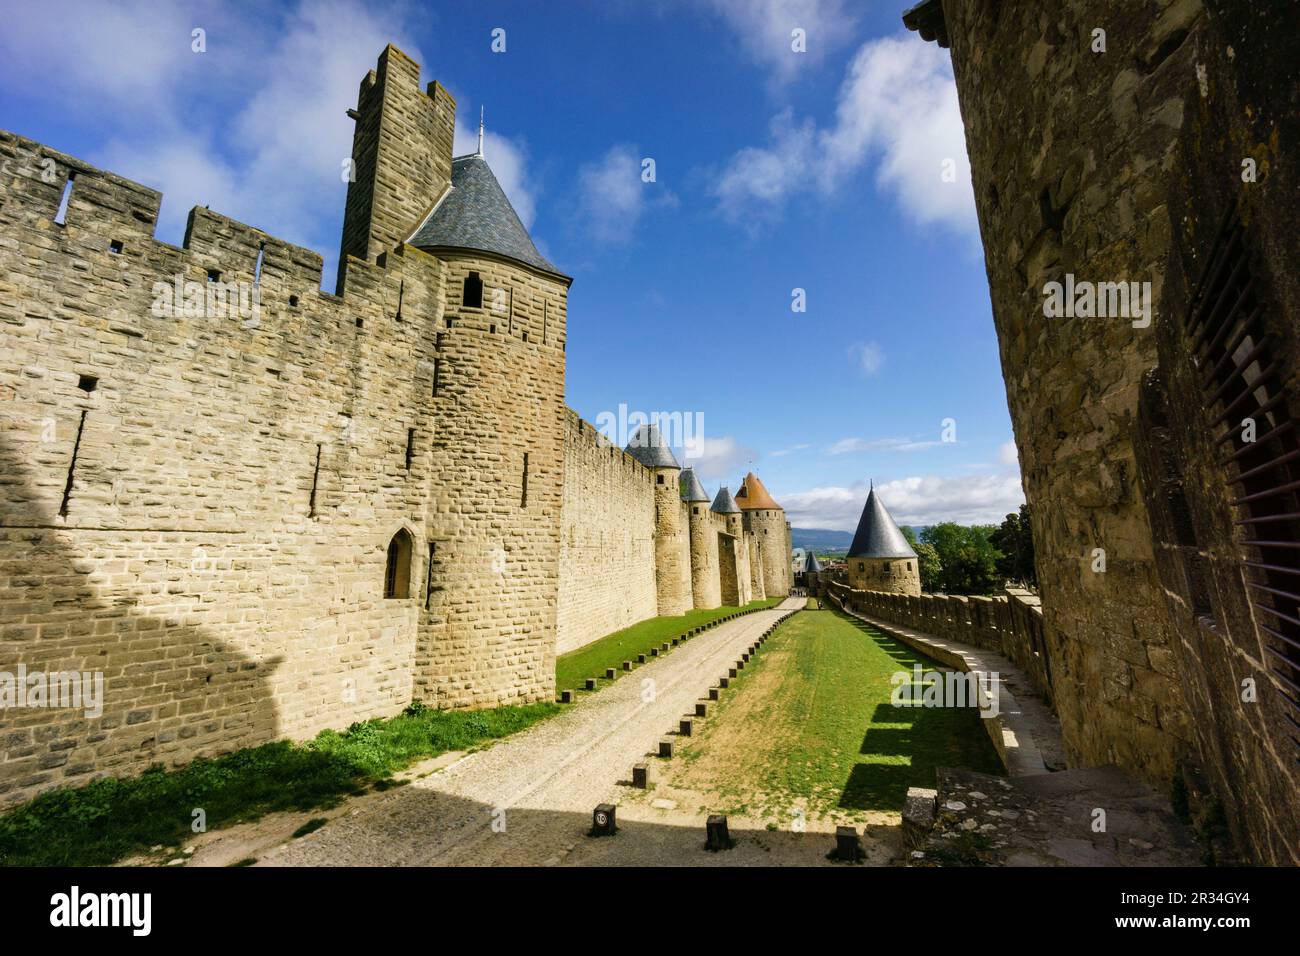 ciudadela amurallada de Carcasona , declarada en 1997 Patrimonio de la Humanidad por la Unesco, capital del departamento del Aude, region Languedoc-Rosellon, Francia, Europa. Stock Photo